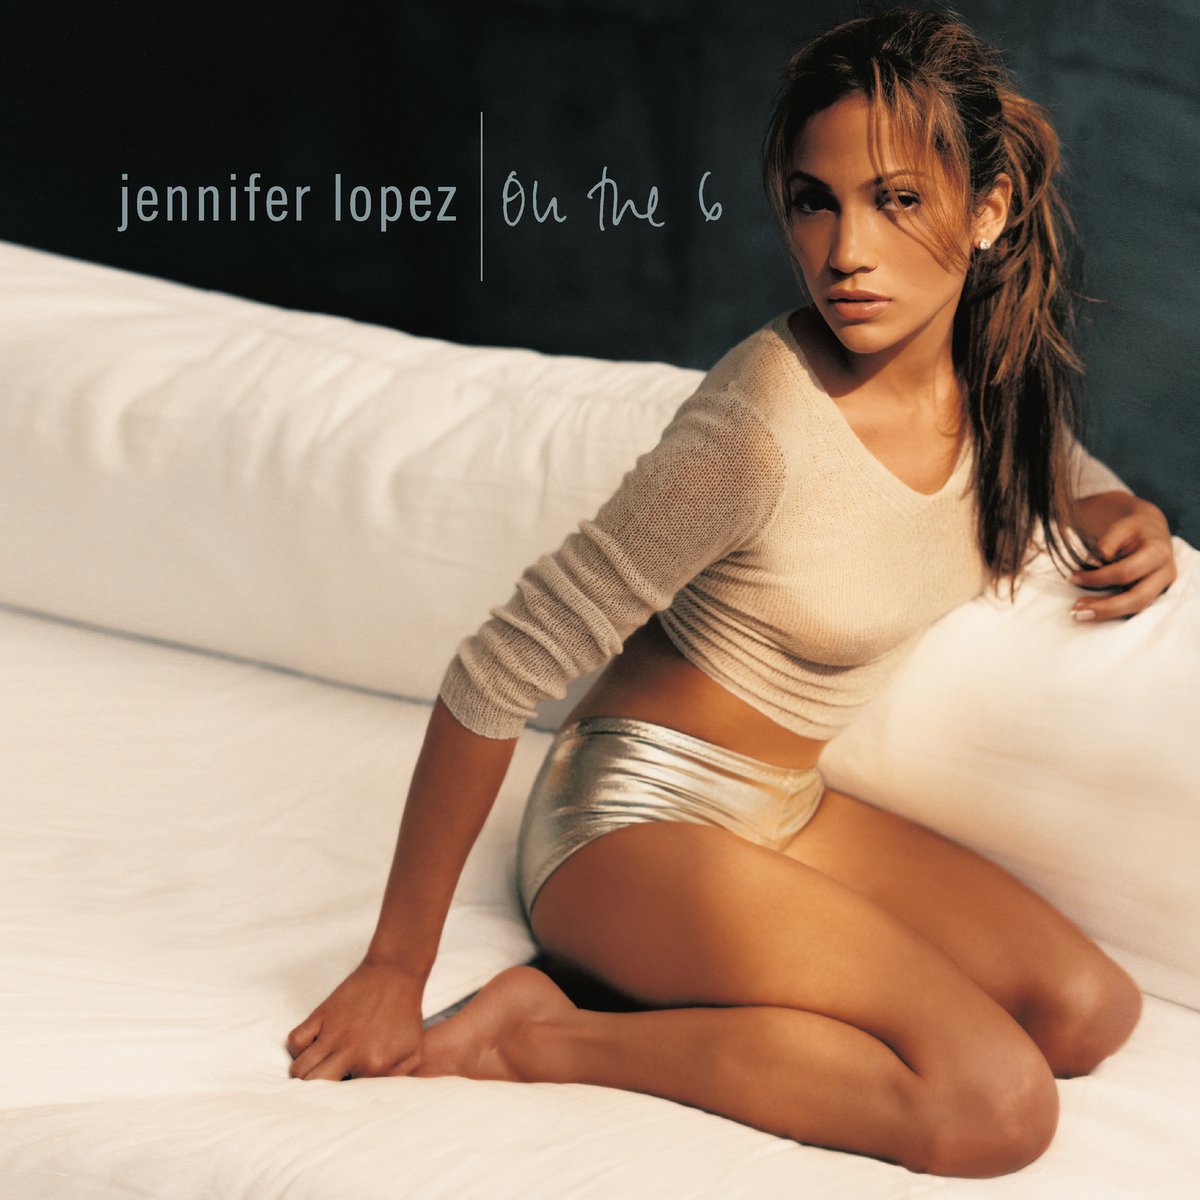 On the 6 - Jennifer Lopez